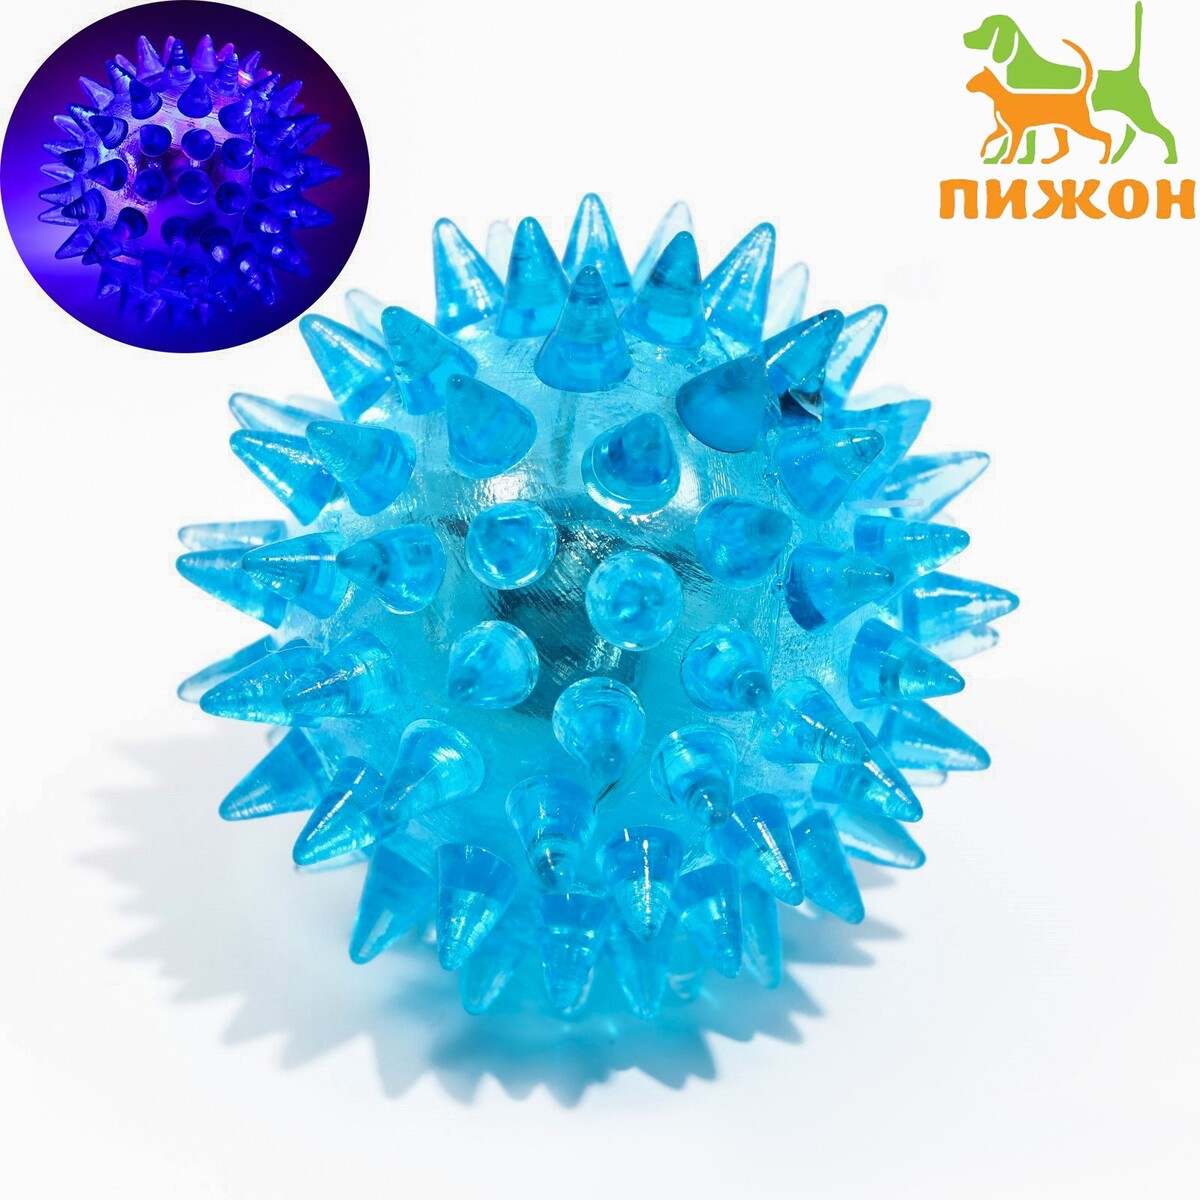 Мяч светящийся для животных малый, tpr, 4,5 см, голубой мяч светящийся для животных малый tpr 4 5 см голубой